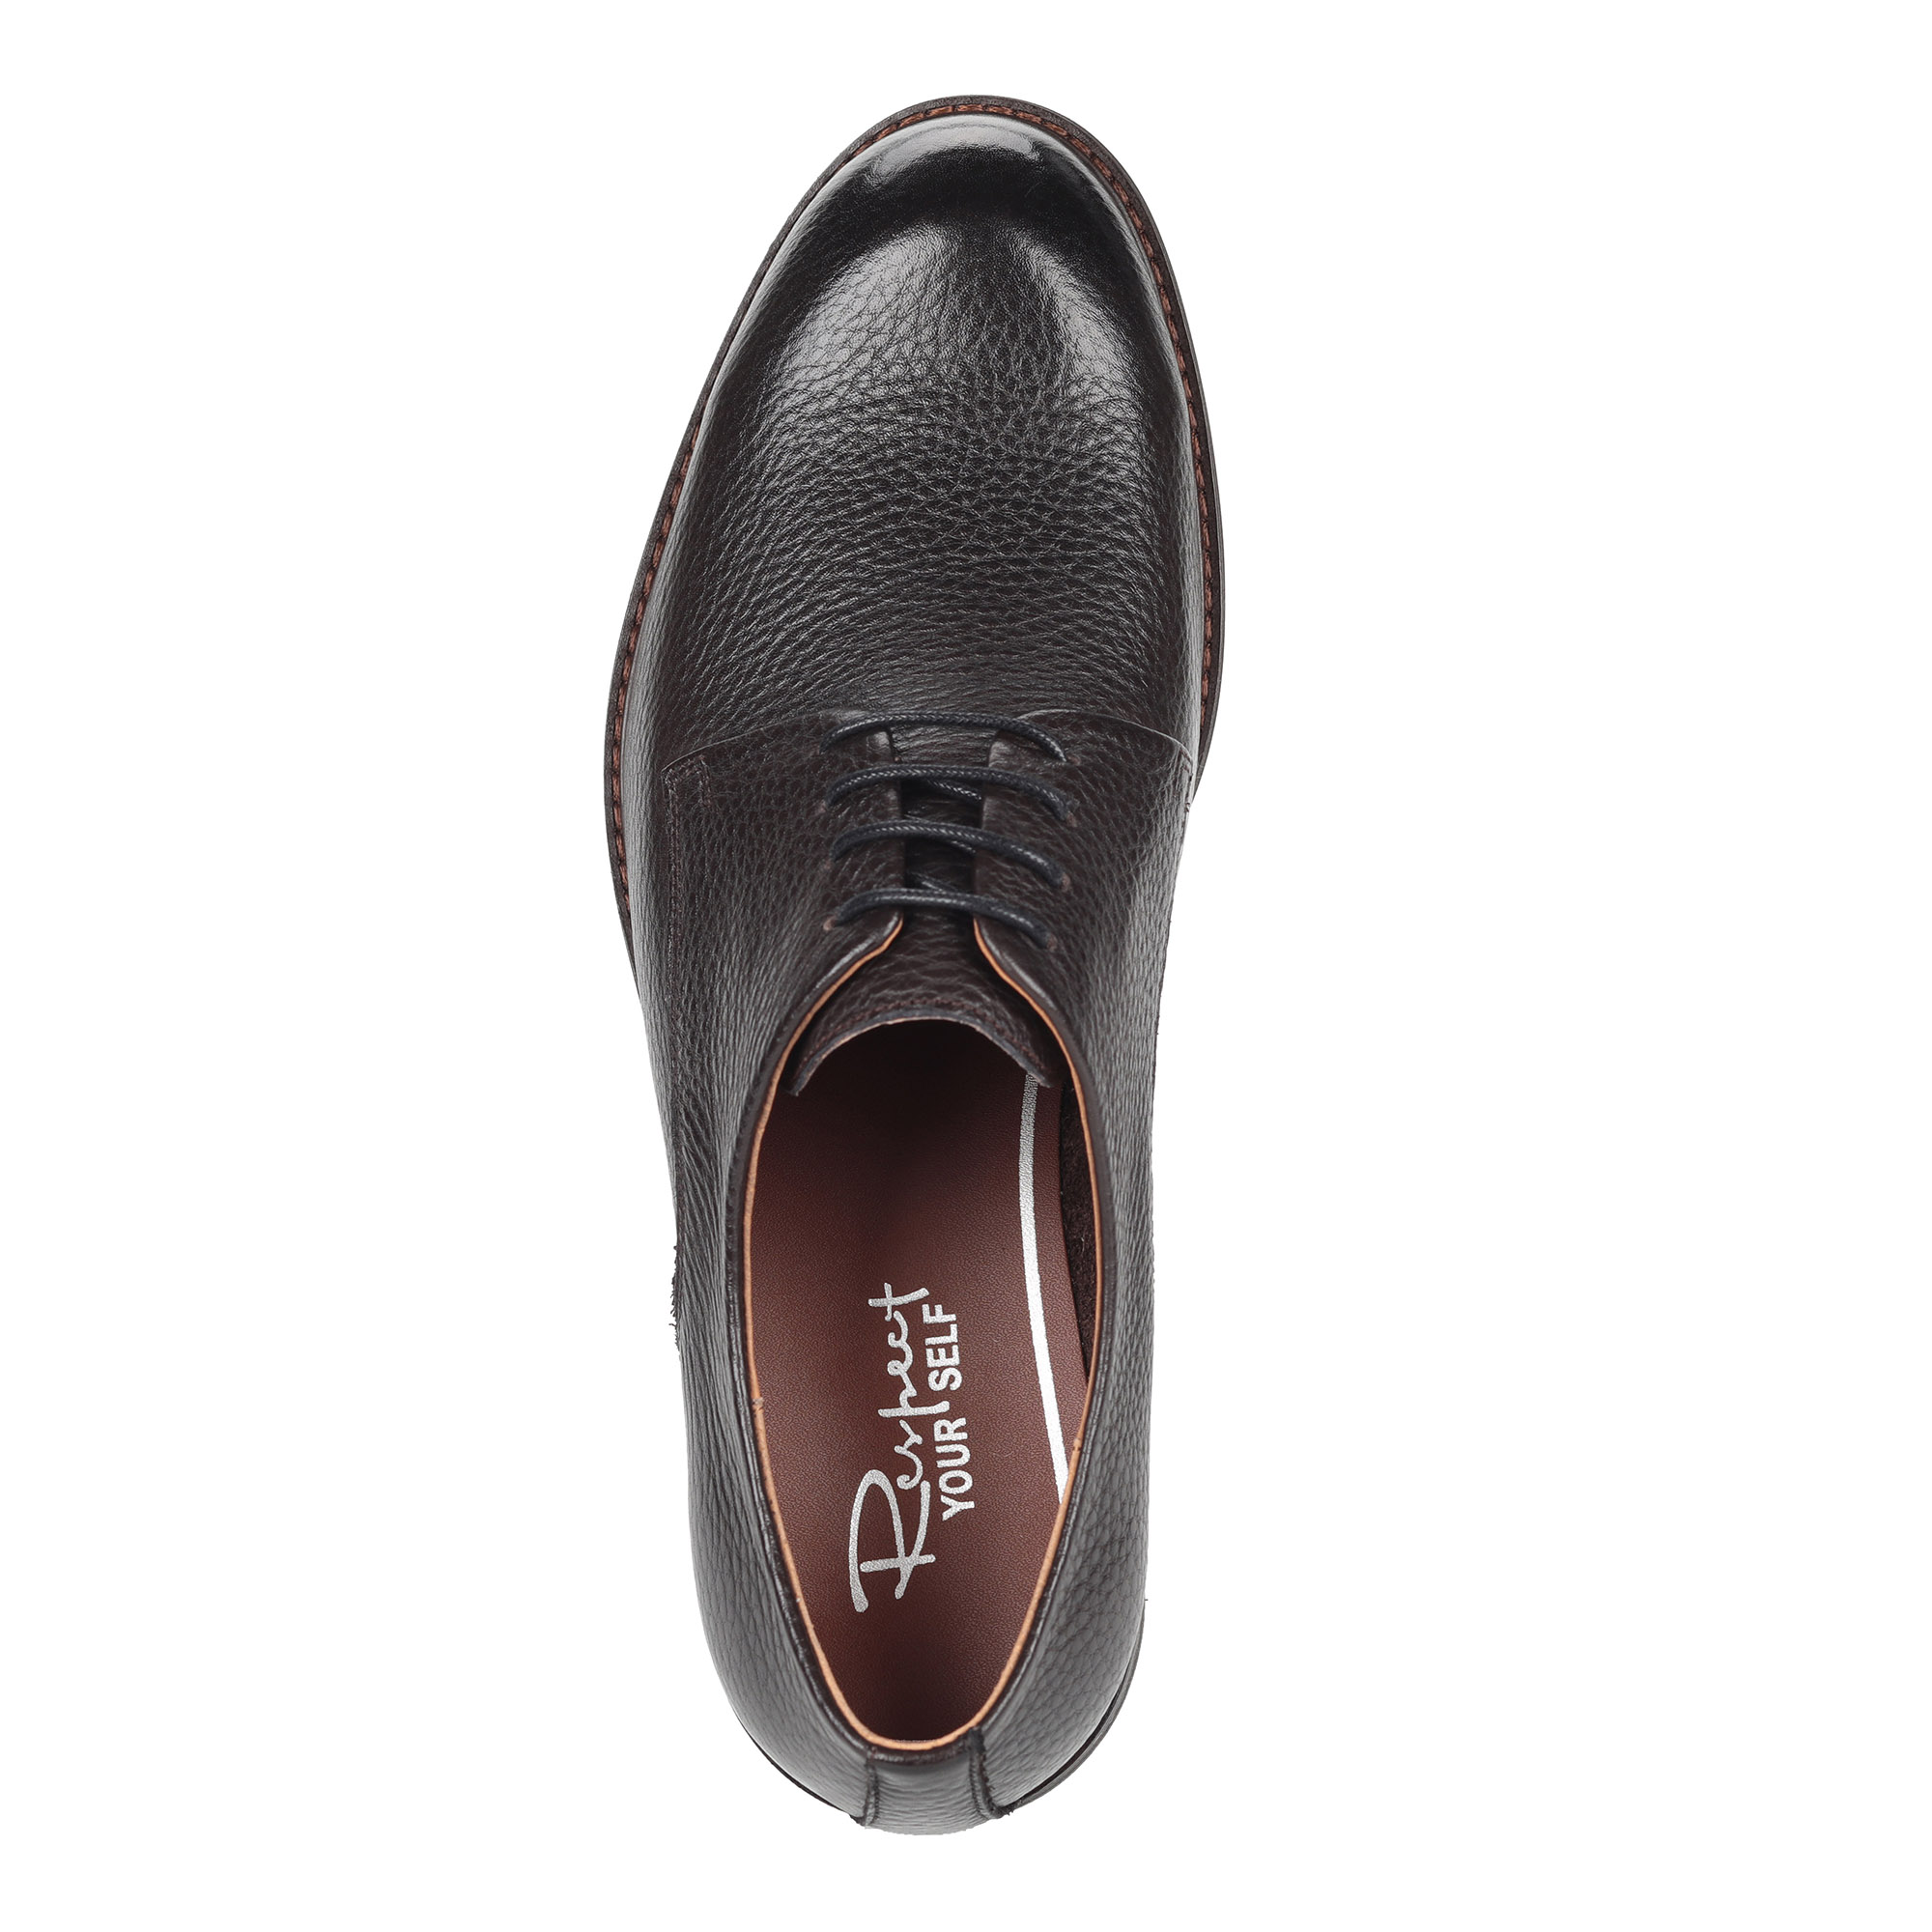 Коричневые полуботинки из кожи на шнуровке от Respect-shoes